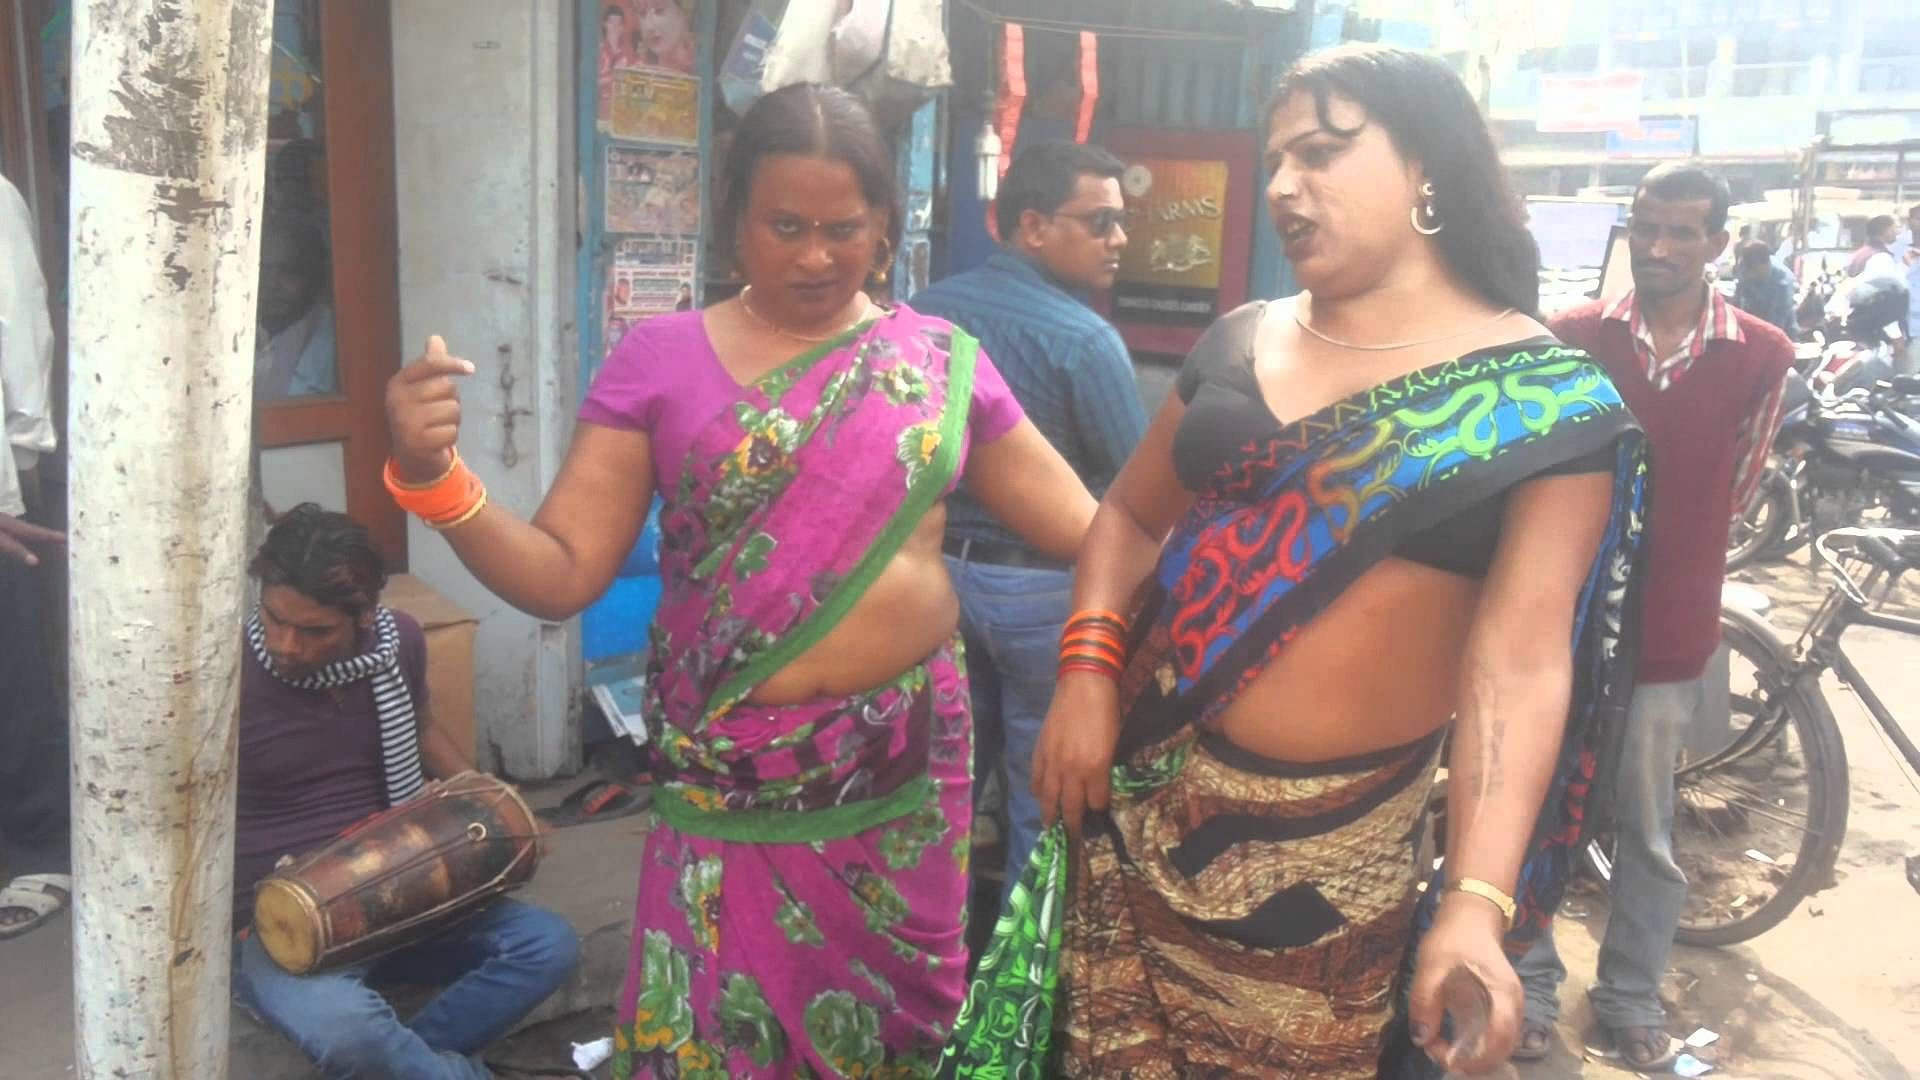 Virgin Kinar Sex - à¤¬à¥à¤§à¤µà¤¾à¤° à¤•à¥‡ à¤¦à¤¿à¤¨ à¤•à¤¿à¤¨à¥à¤¨à¤° à¤¦à¤¿à¤–à¥‡à¤‚ à¤¤à¥‹ à¤¯à¤¹ à¤•à¤¾à¤® à¤œà¤°à¥‚à¤° à¤•à¤°à¥‡à¤‚ - Importance Of Kinnar In  Astrology And Mythology - Amar Ujala Hindi News Live